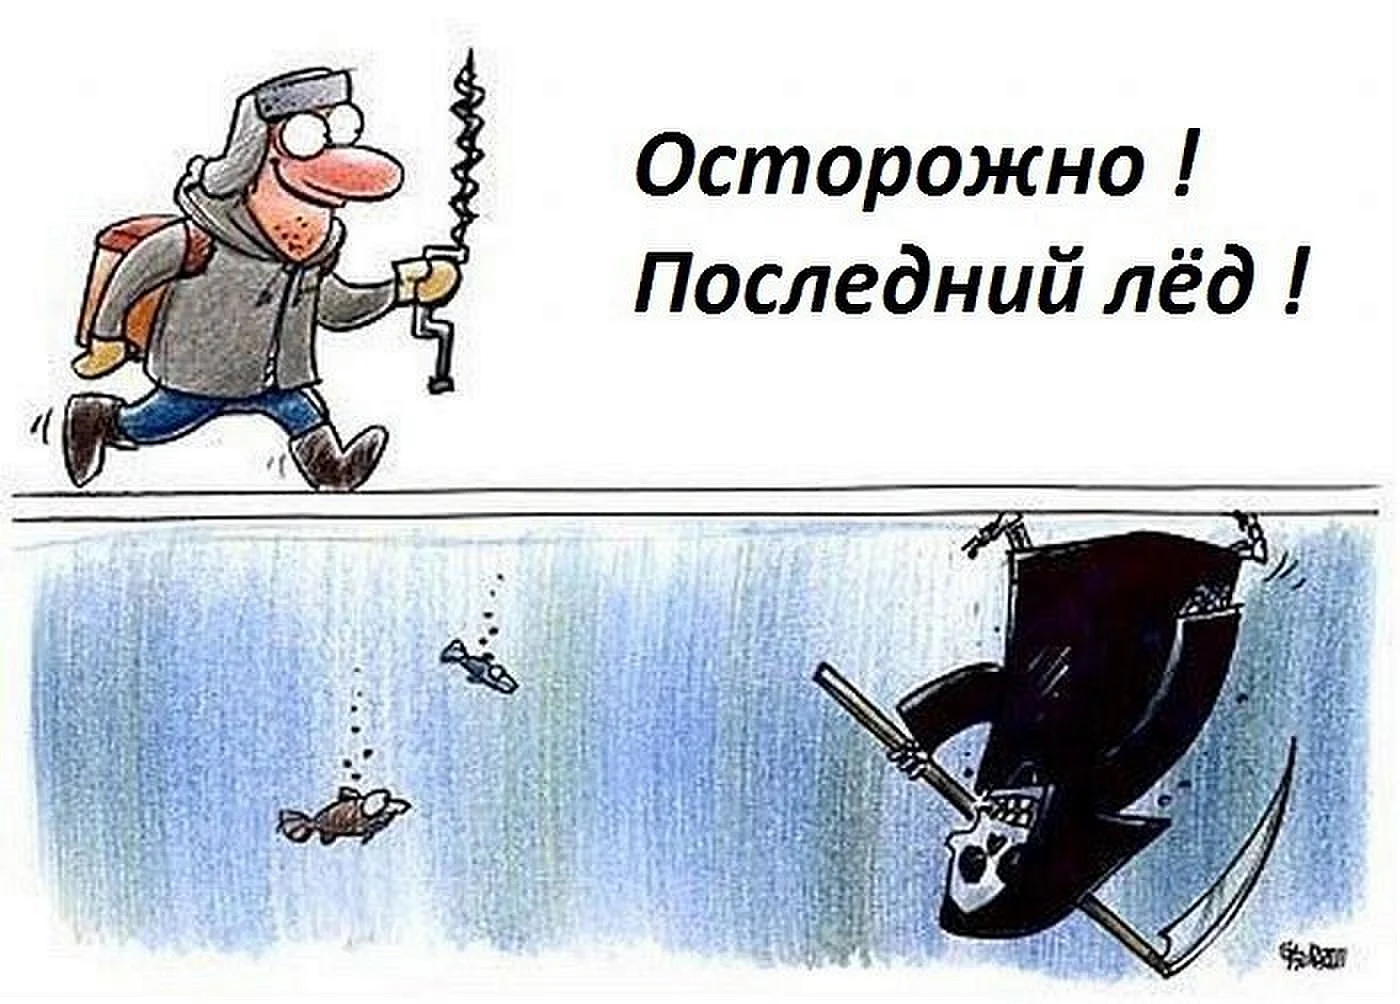 Зимняя рыбалка карикатура